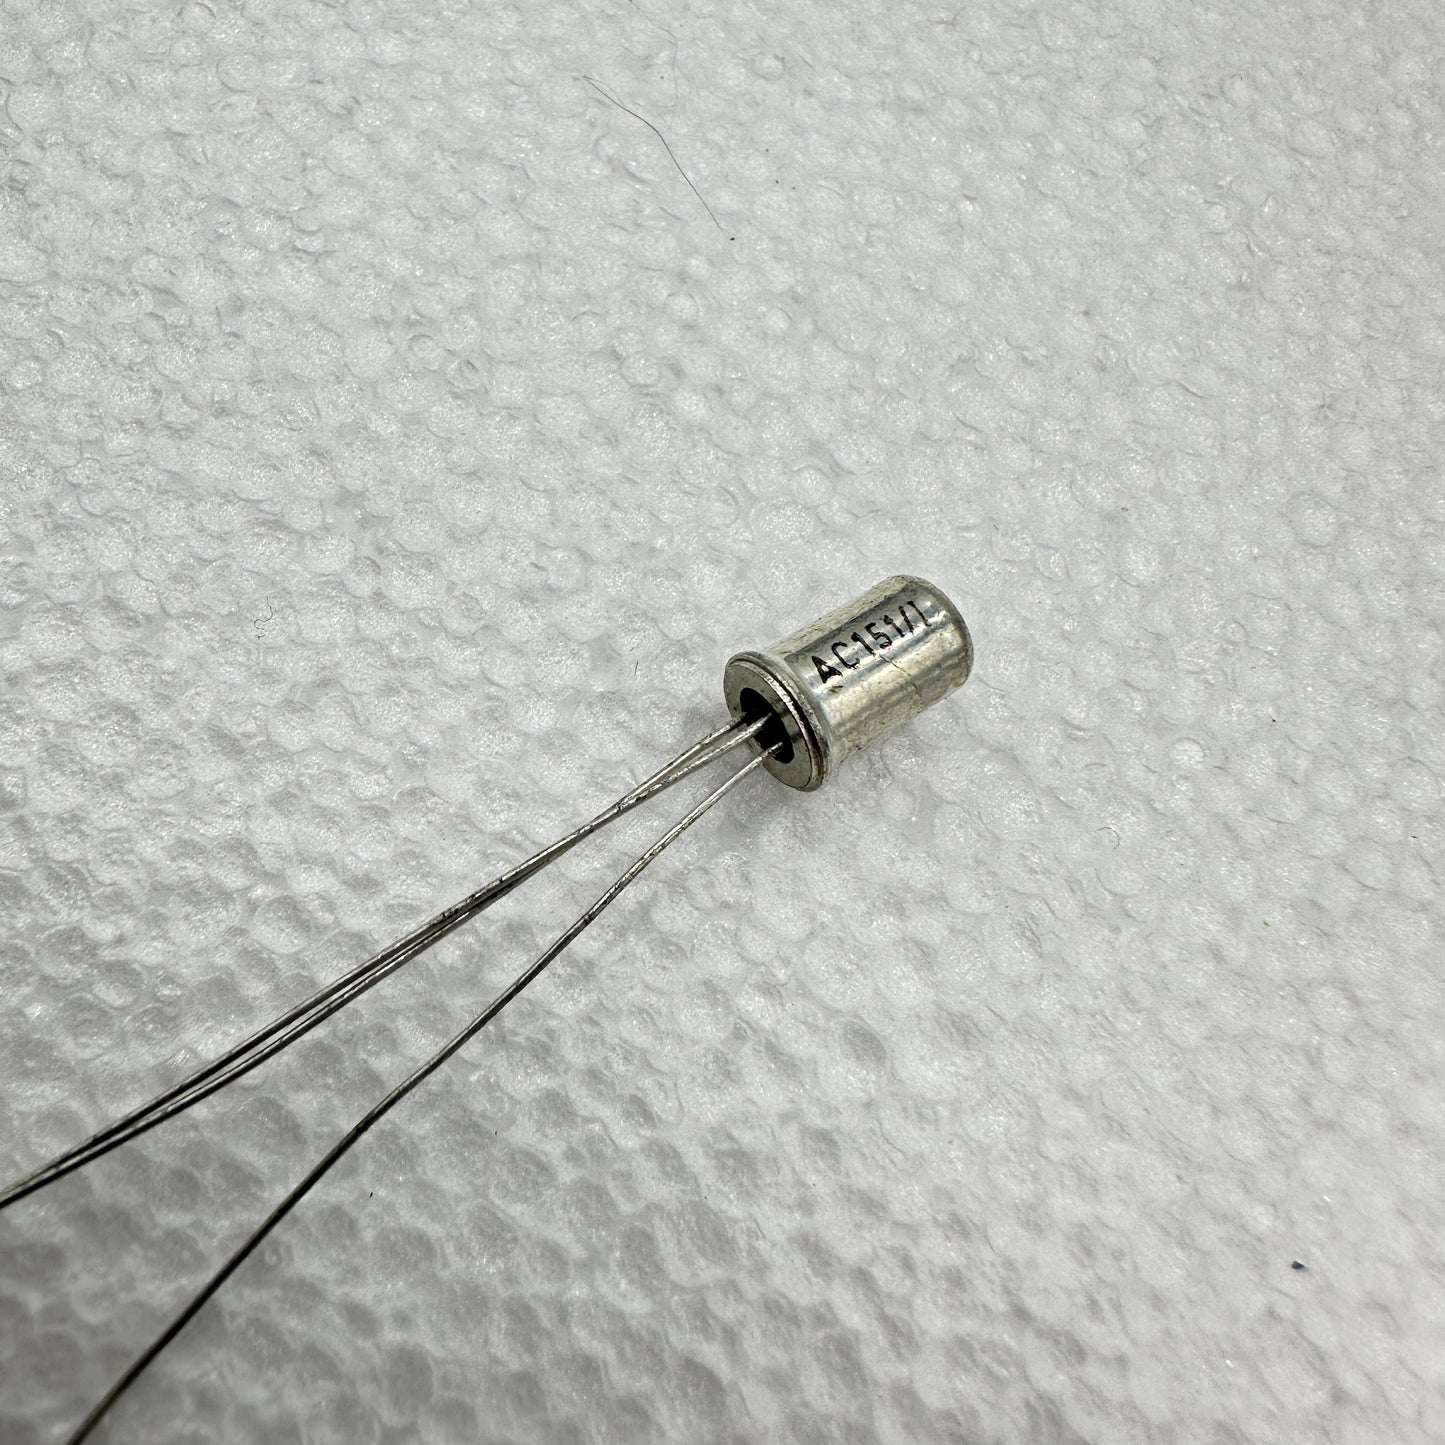 AC151/I Germanium Transistor NOS - Rare & Reclaimed